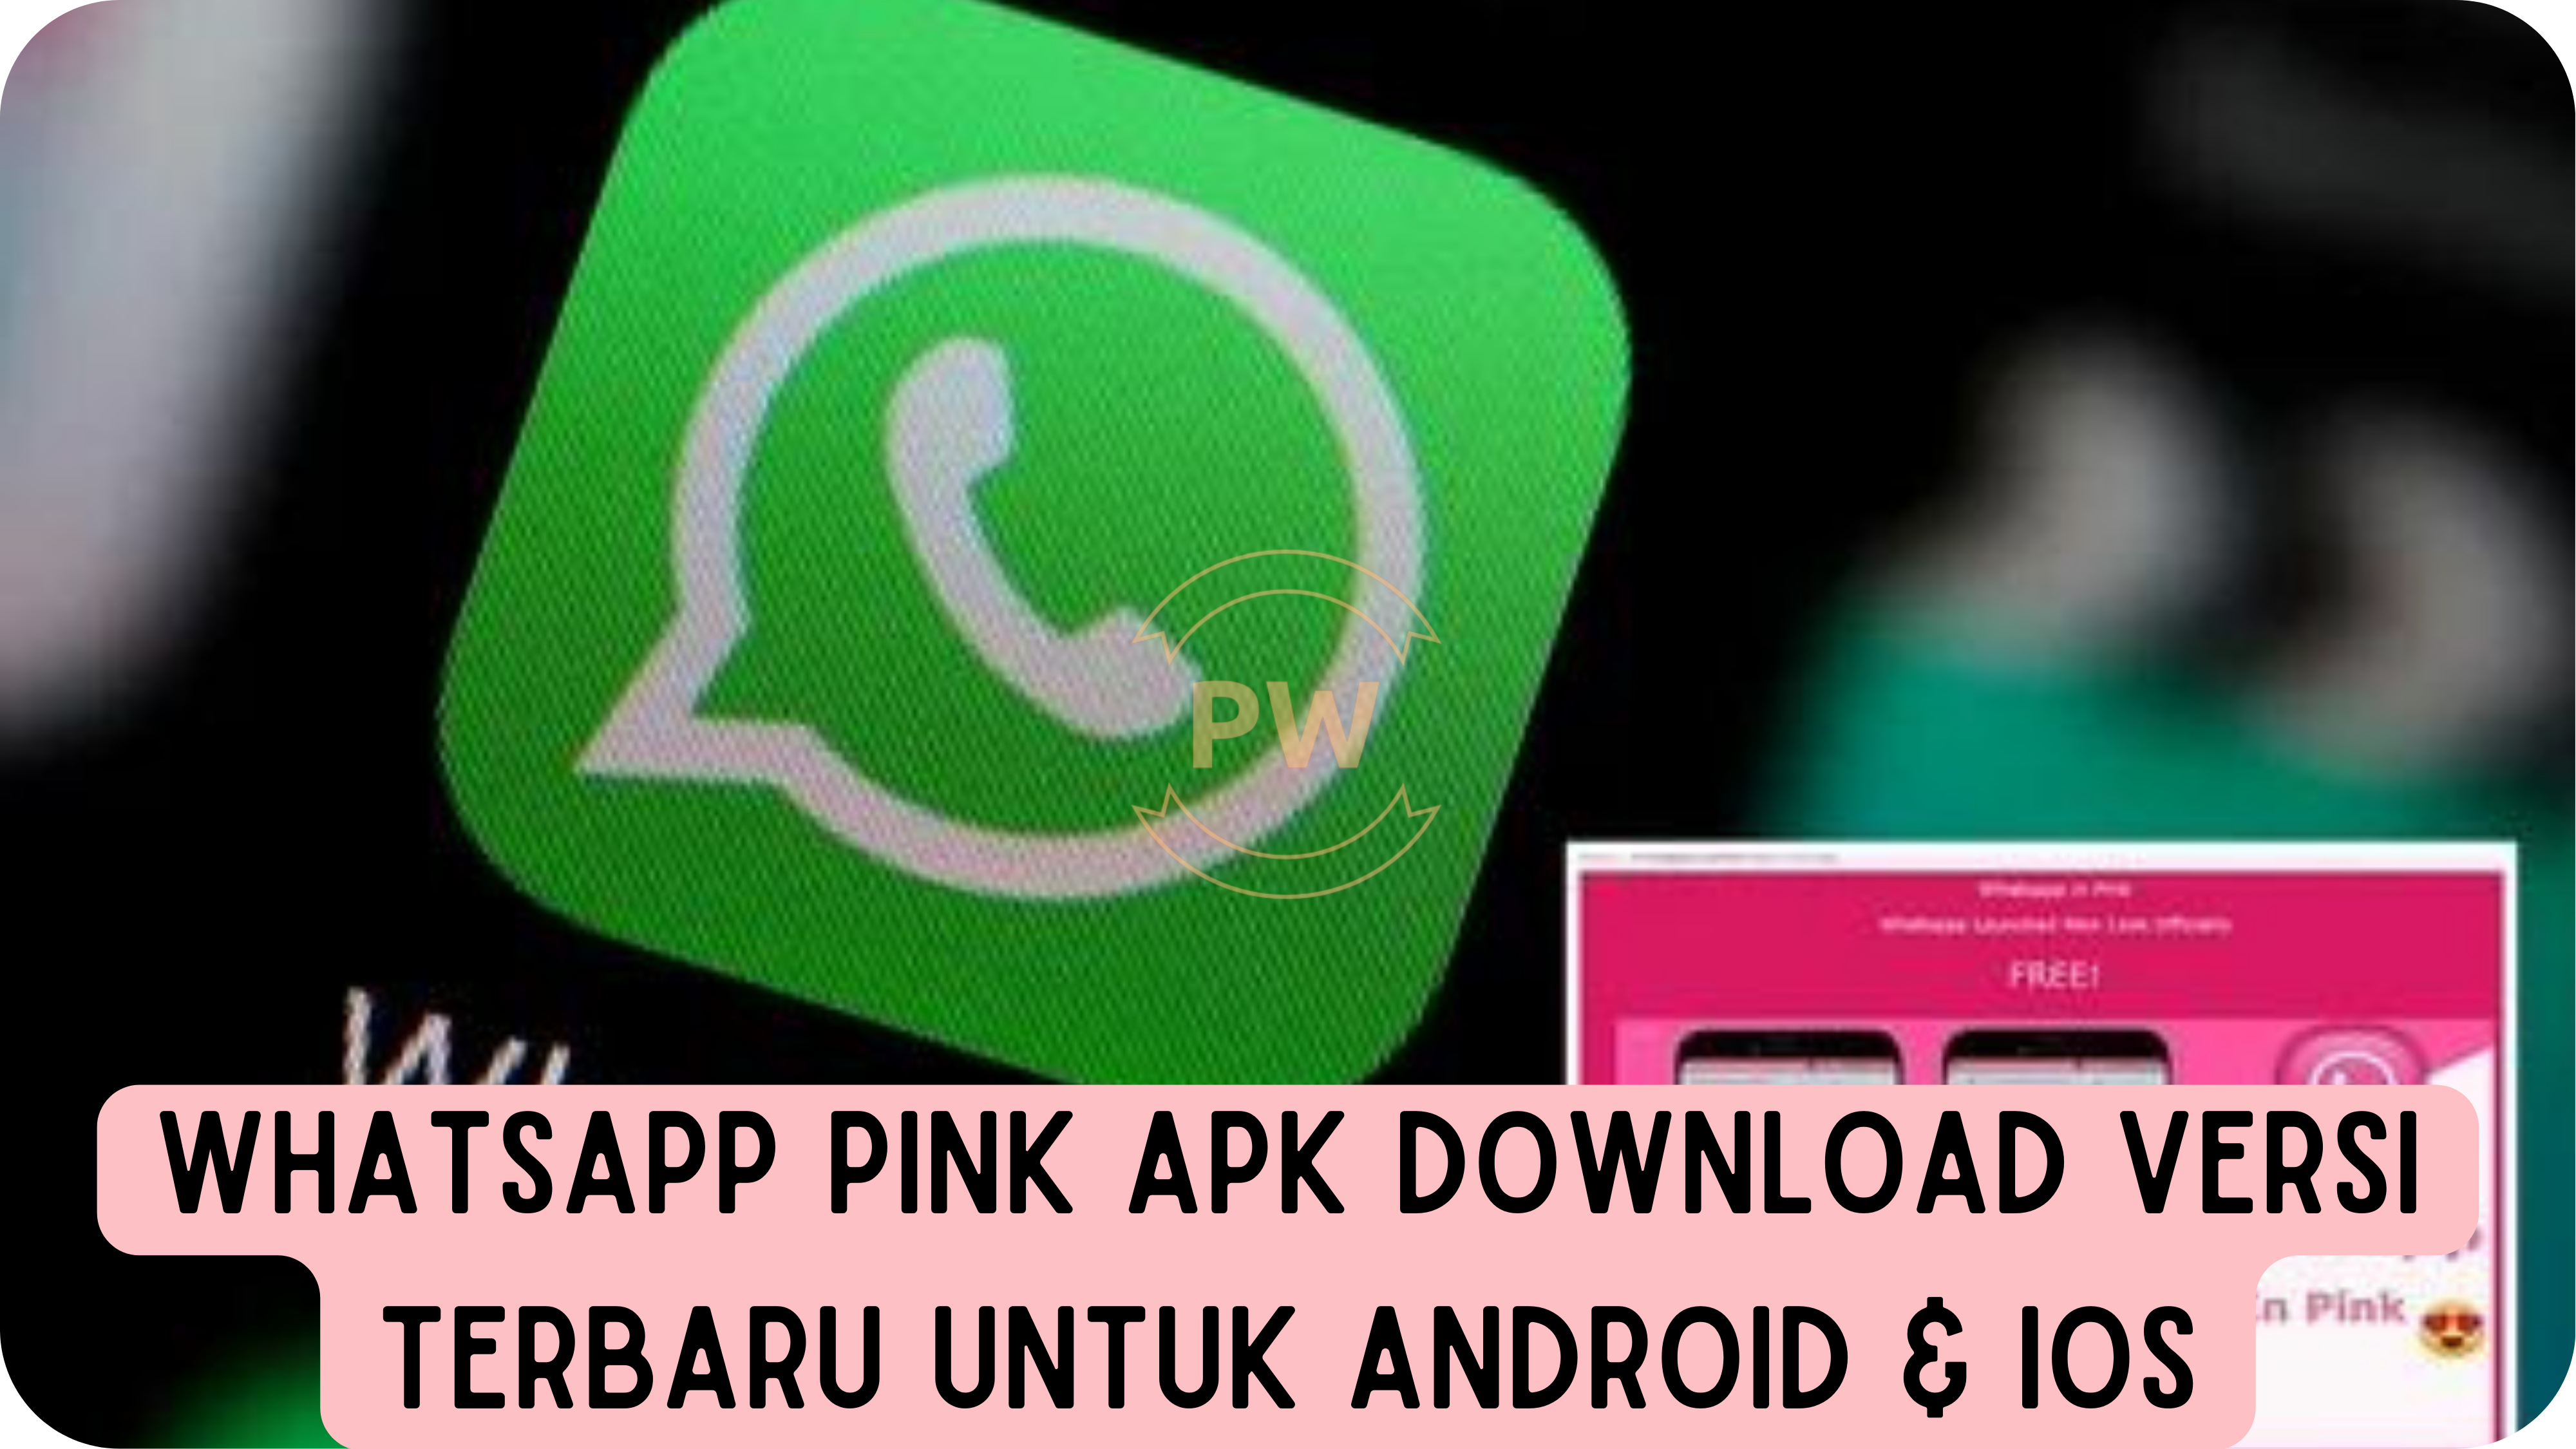 WhatsApp Pink Apk Download Versi Terbaru untuk Android & iOS